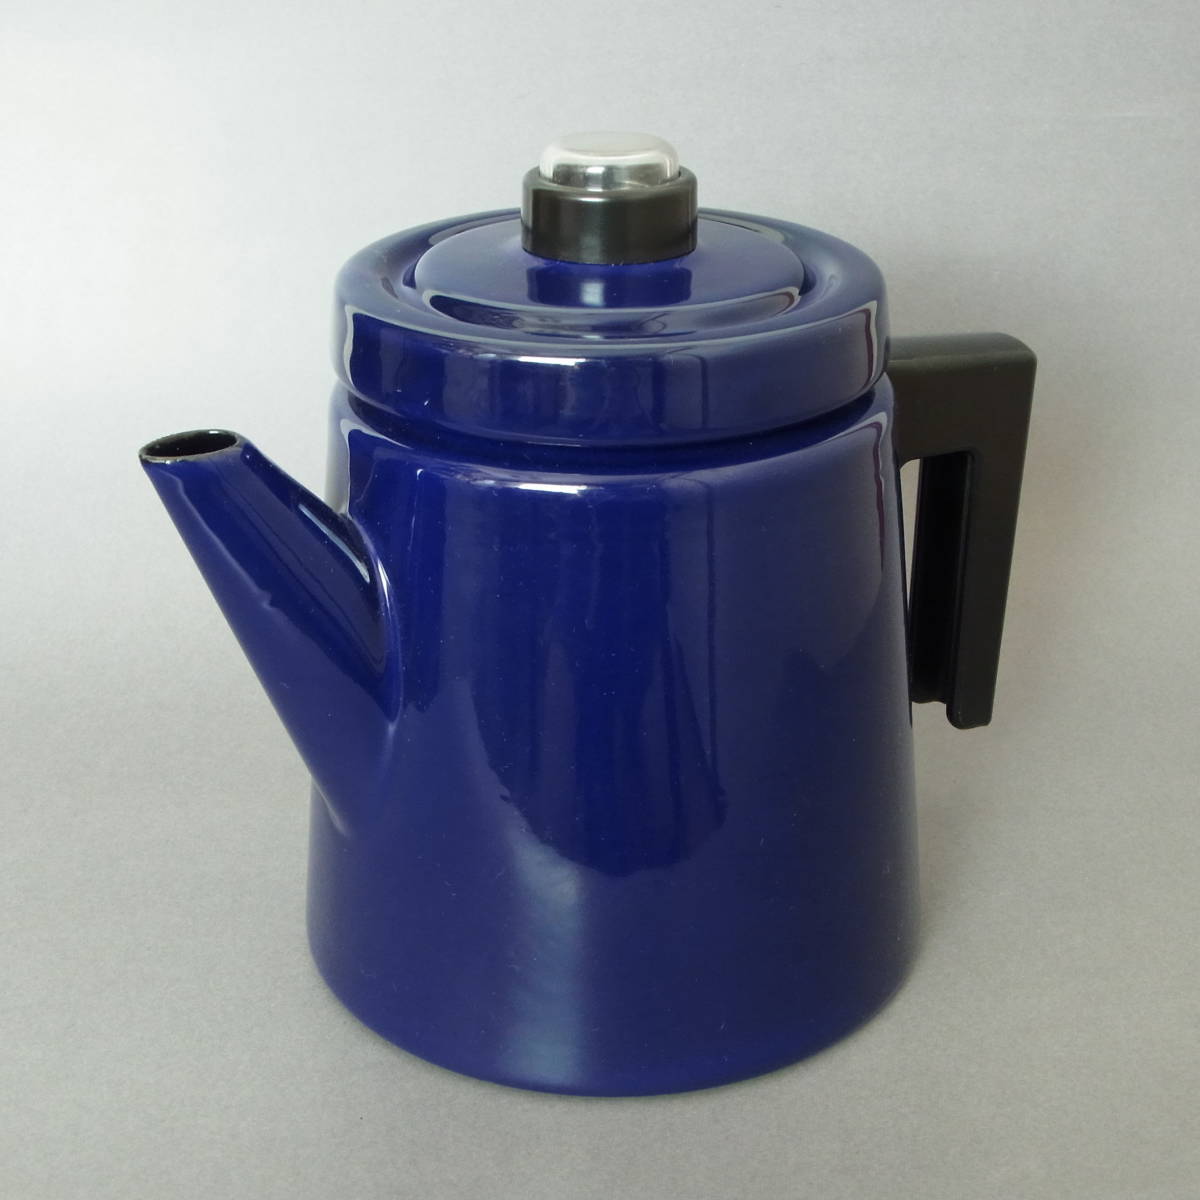 新品未使用 復刻モデル / Vuokko Antti Nurmesniemi Enamel Pot / Blue 1.5L / Made in Finland Finel Arabia Ittala ホーロー 北欧 _画像3